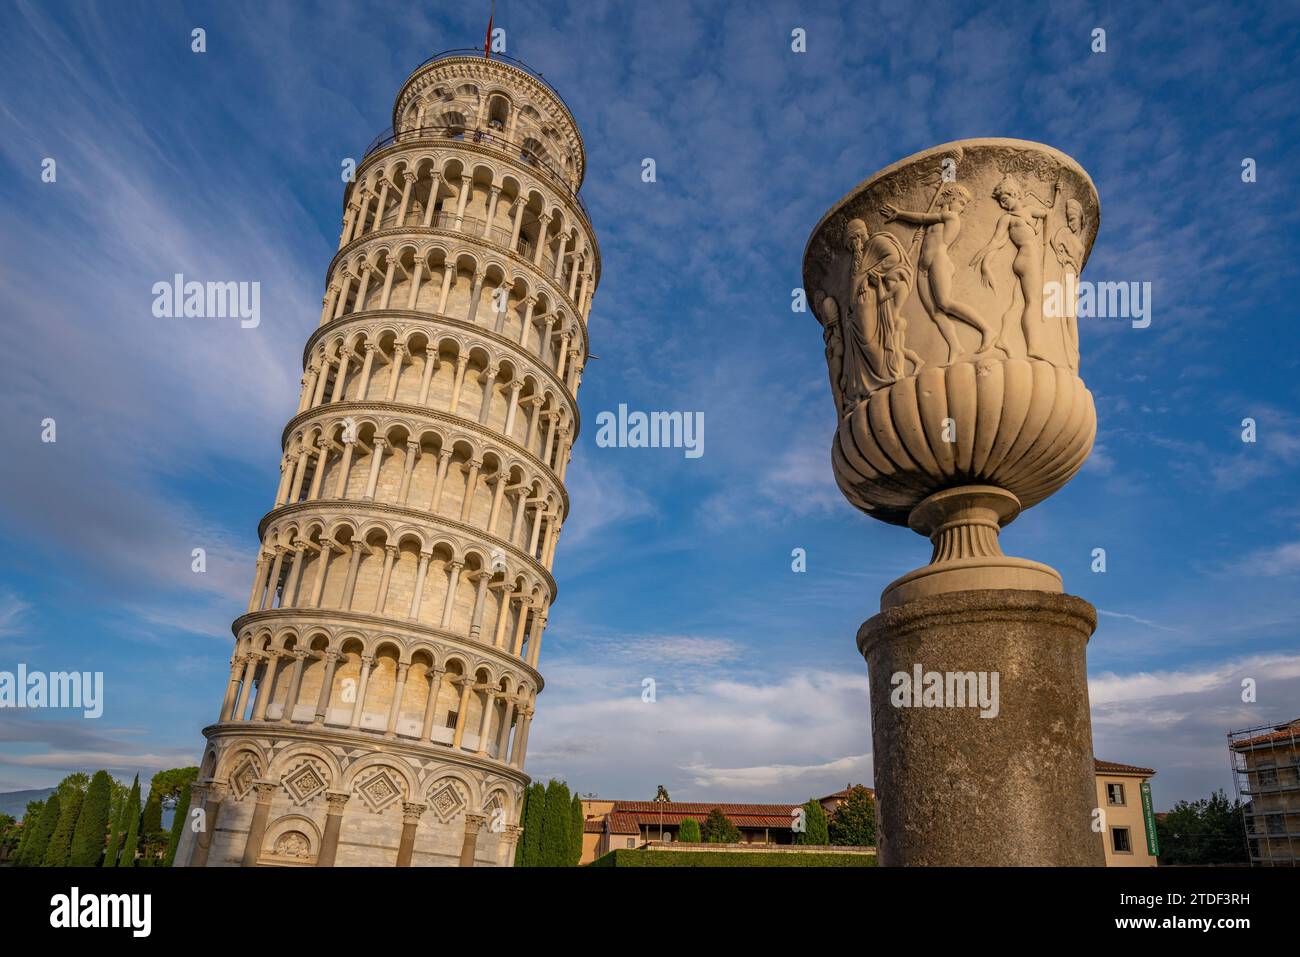 Vue de la tour penchée de Pise, site du patrimoine mondial de l'UNESCO, Pise, province de Pise, Toscane, Italie, Europe Banque D'Images